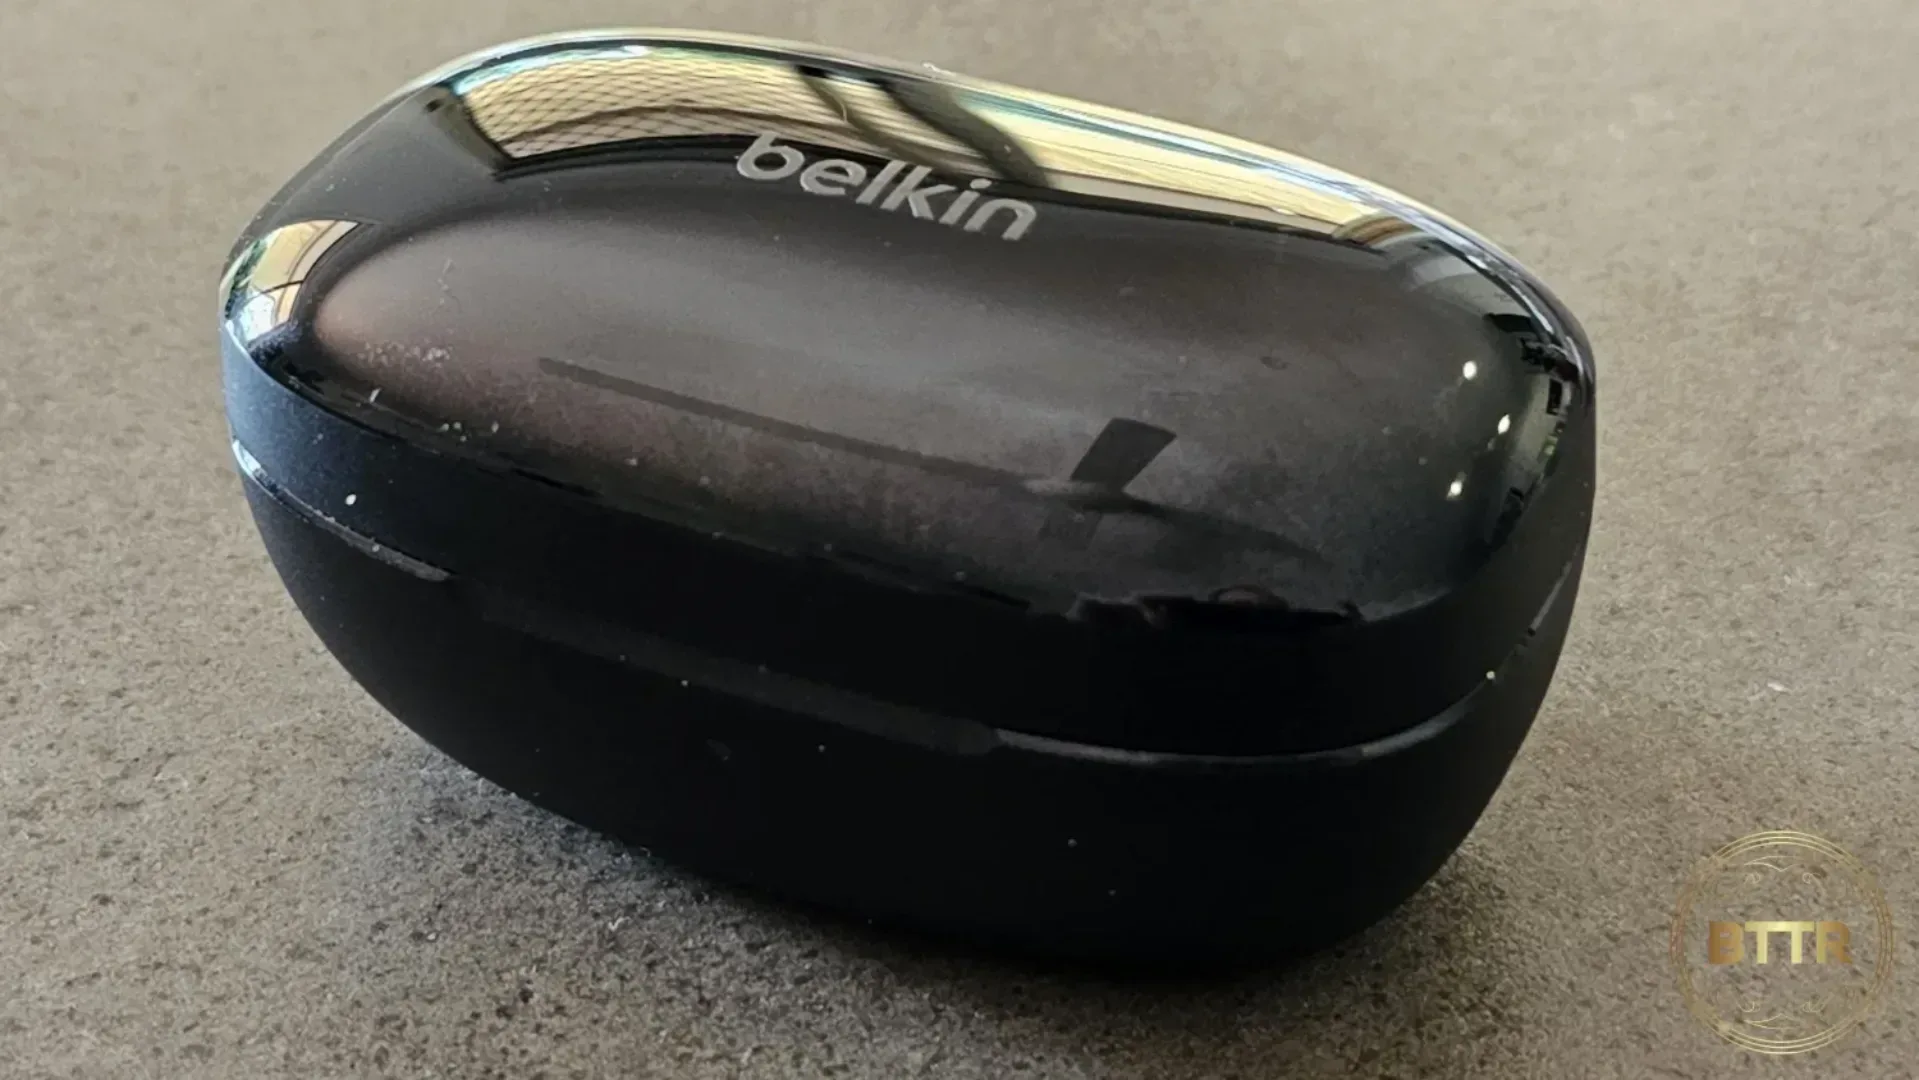 Belkin Soundform Immerse earphones on a table in the case